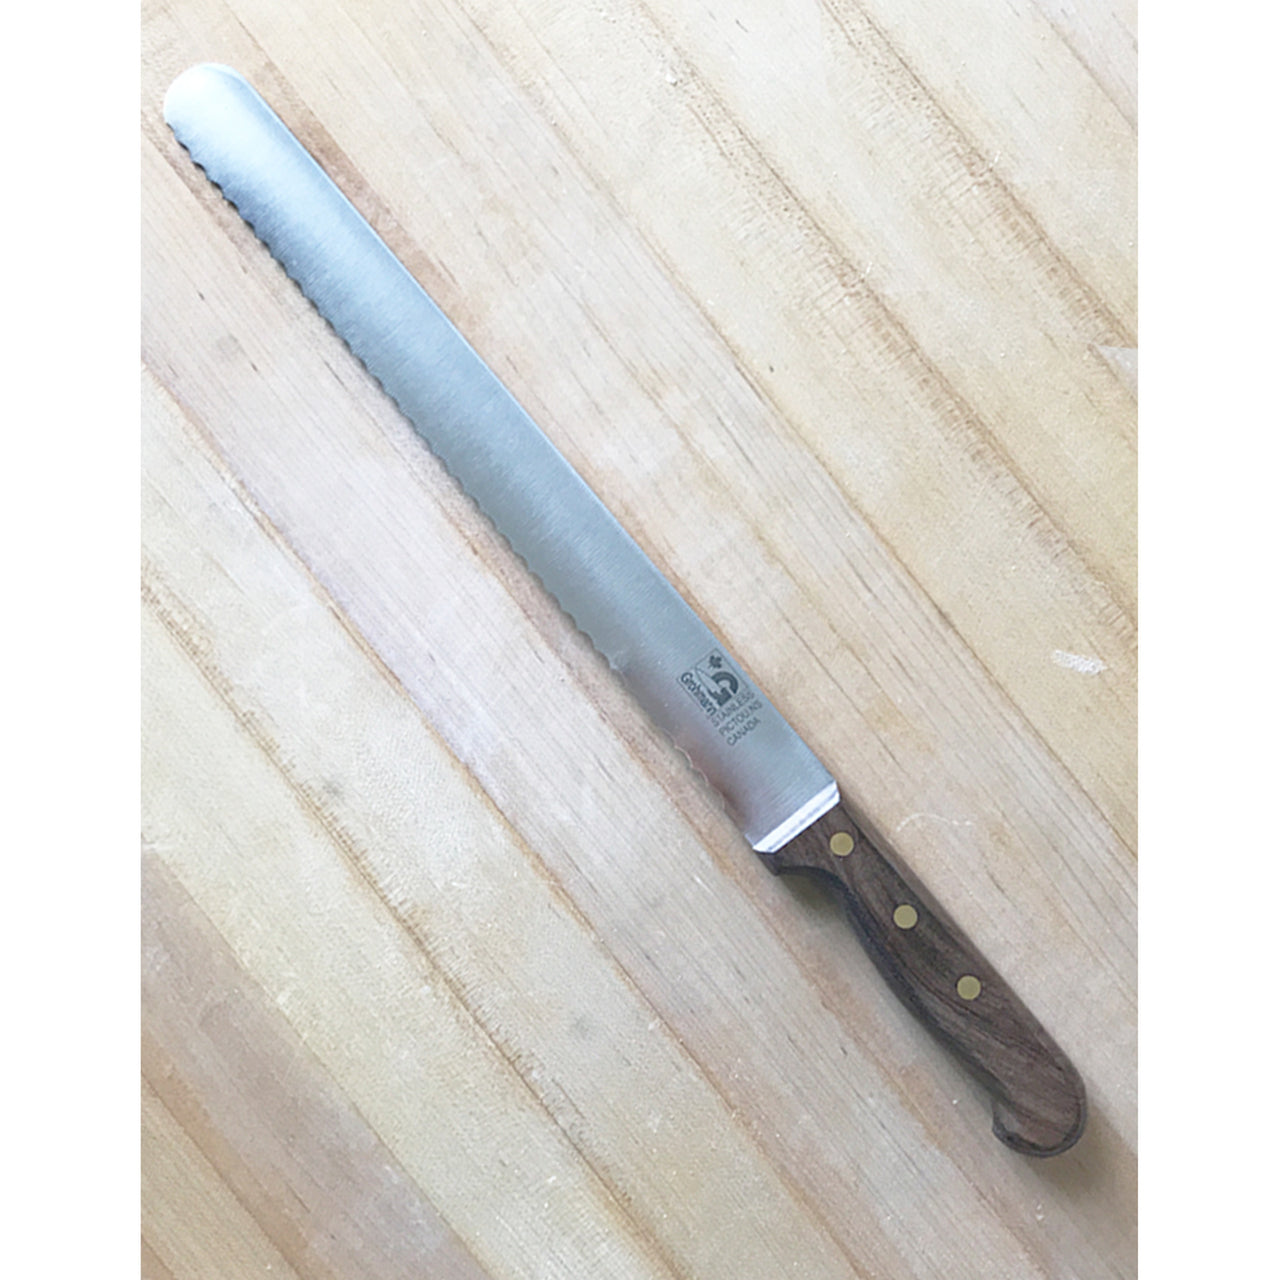 Grohmann Bread Knife